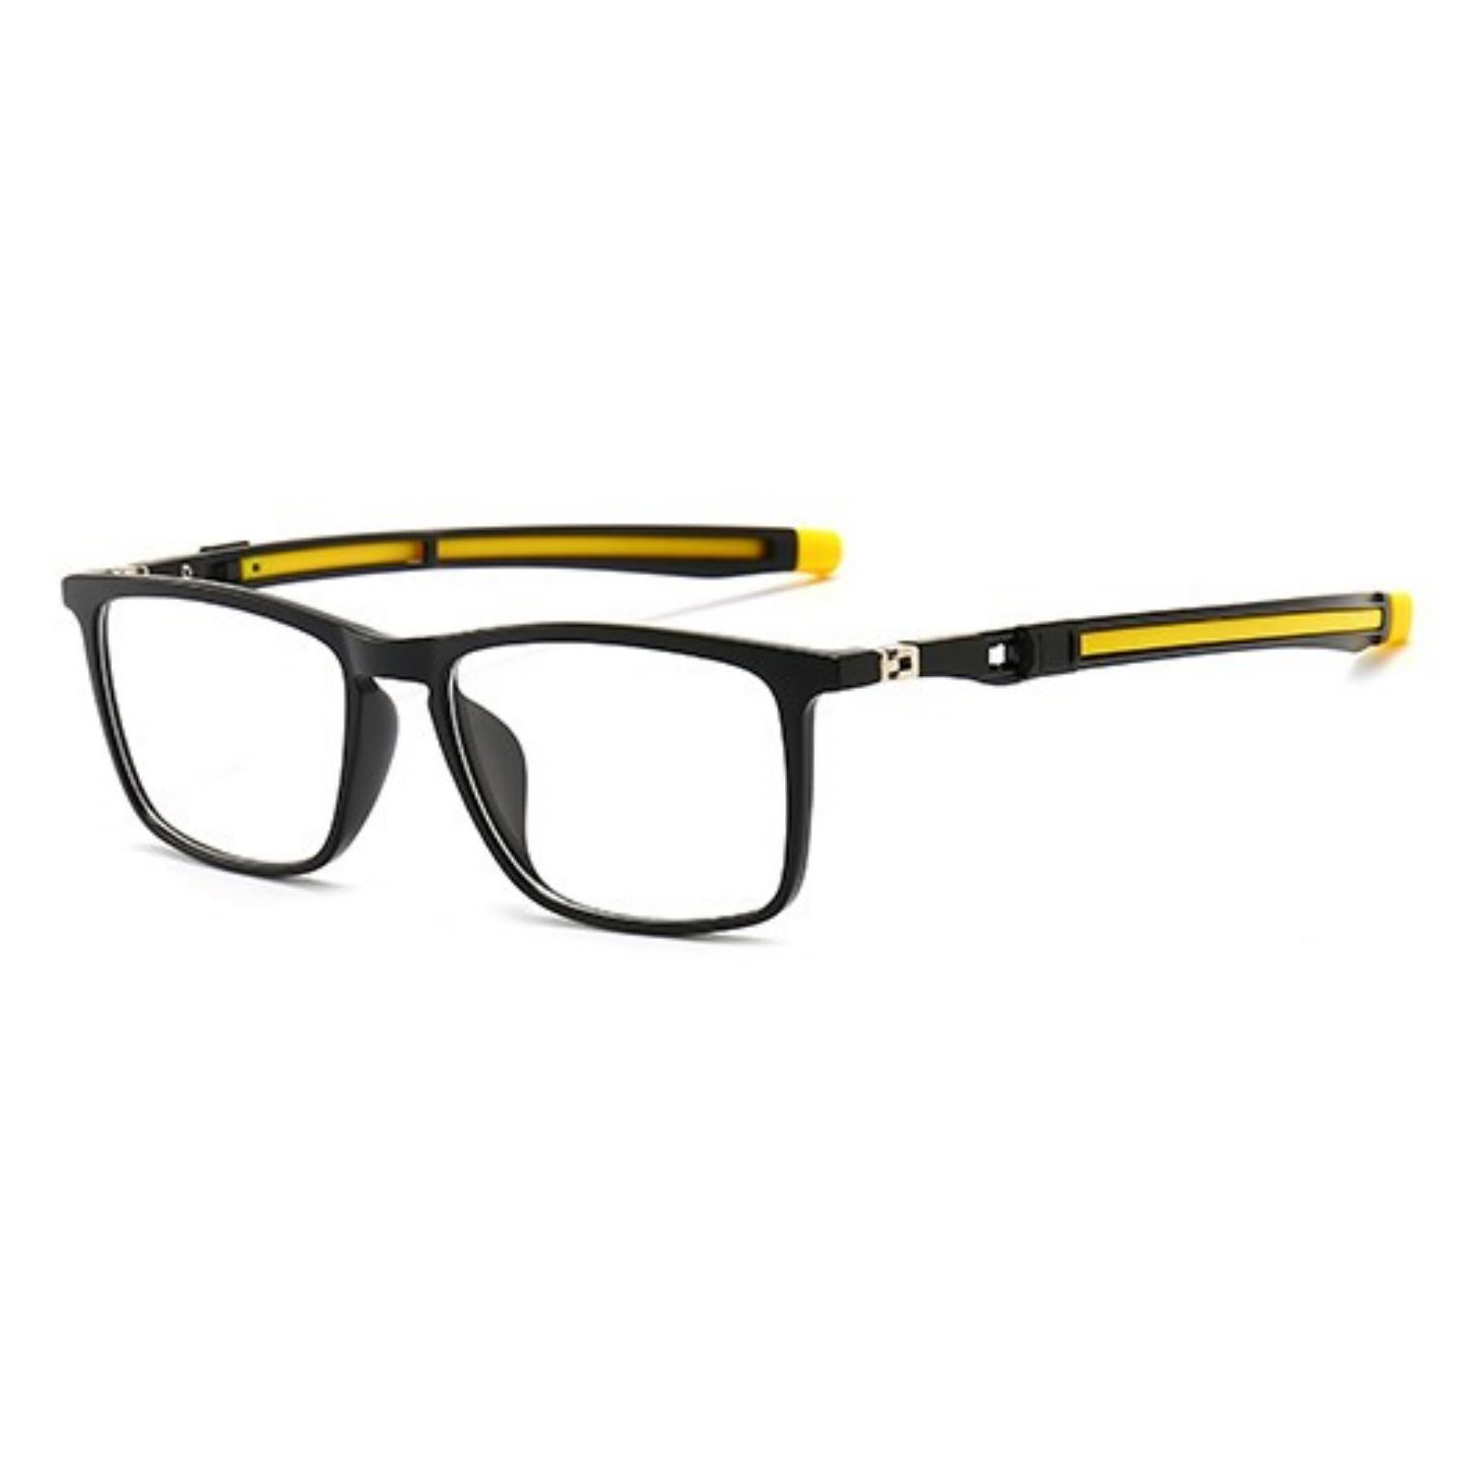 Цена на едро класически слънчеви очила с двойни стъкла